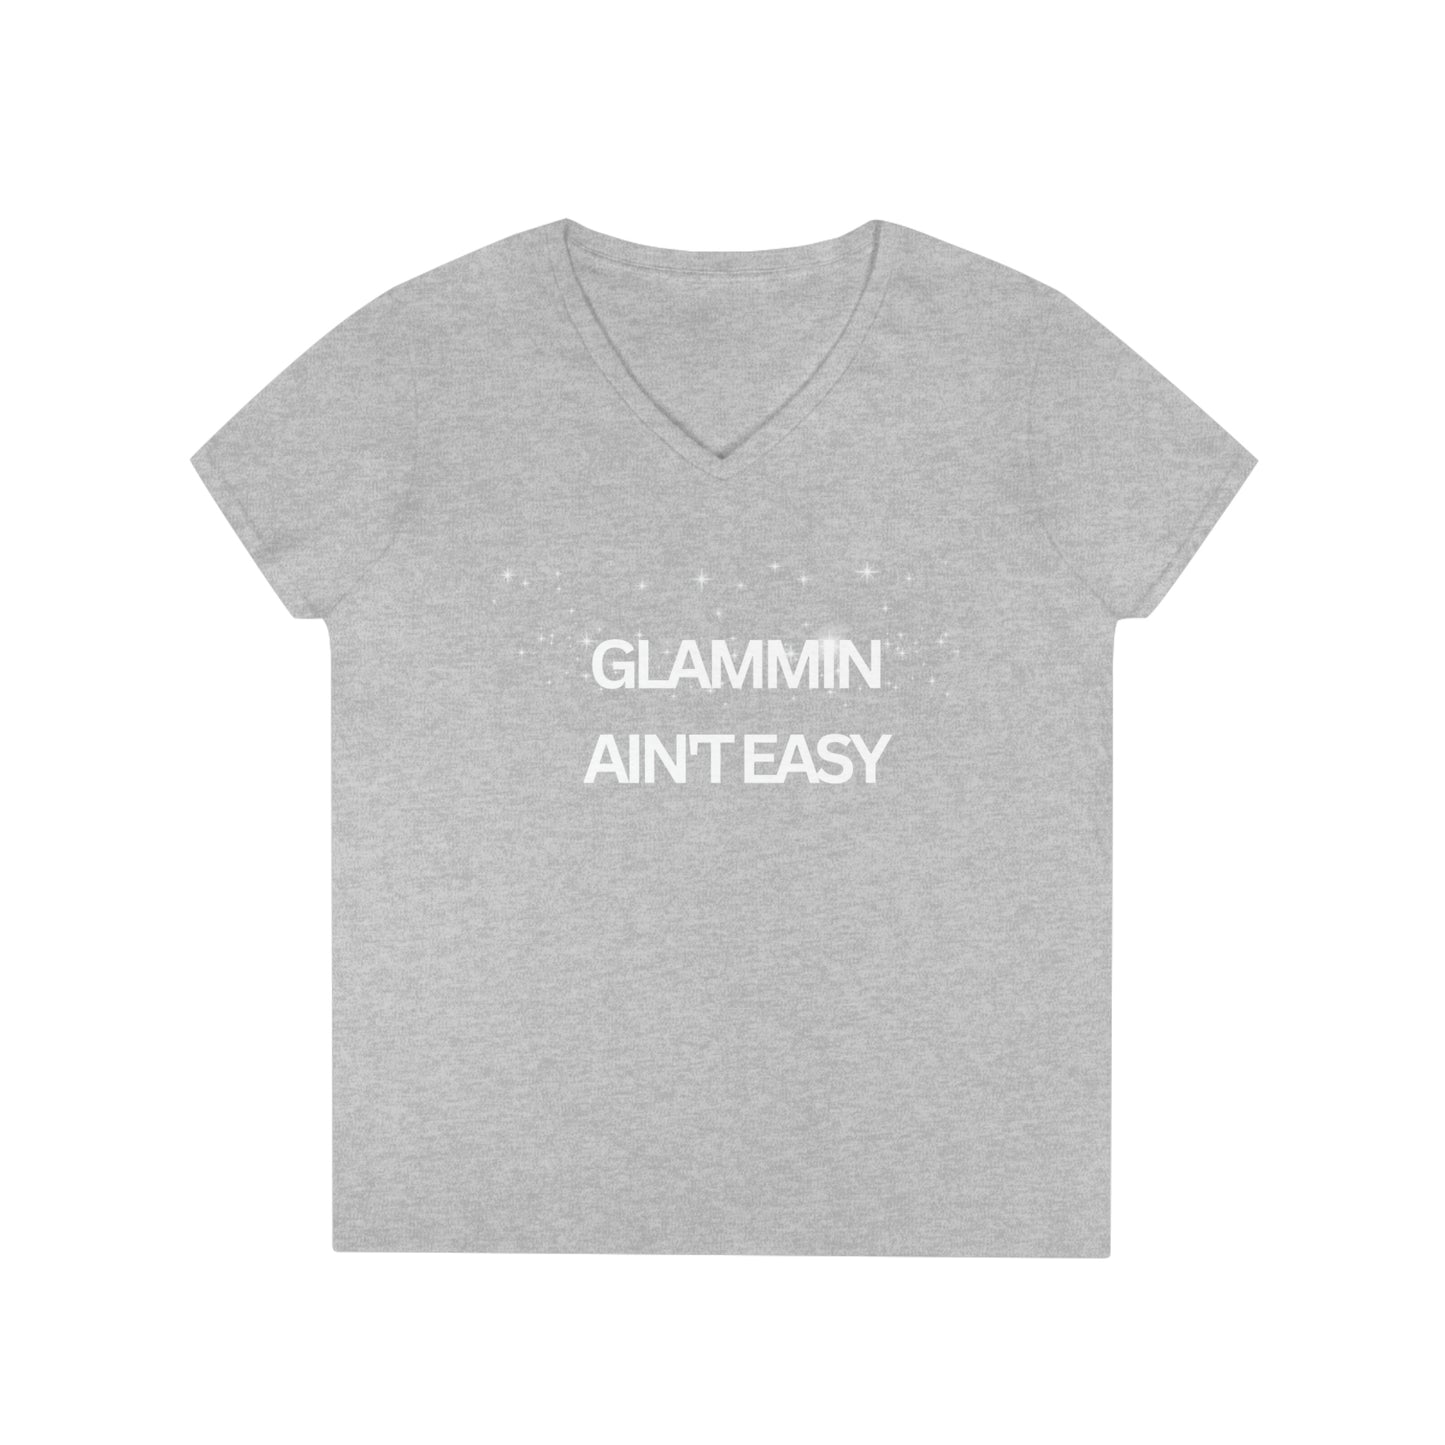 Glamming Ain't Easy, V-Neck T-Shirt